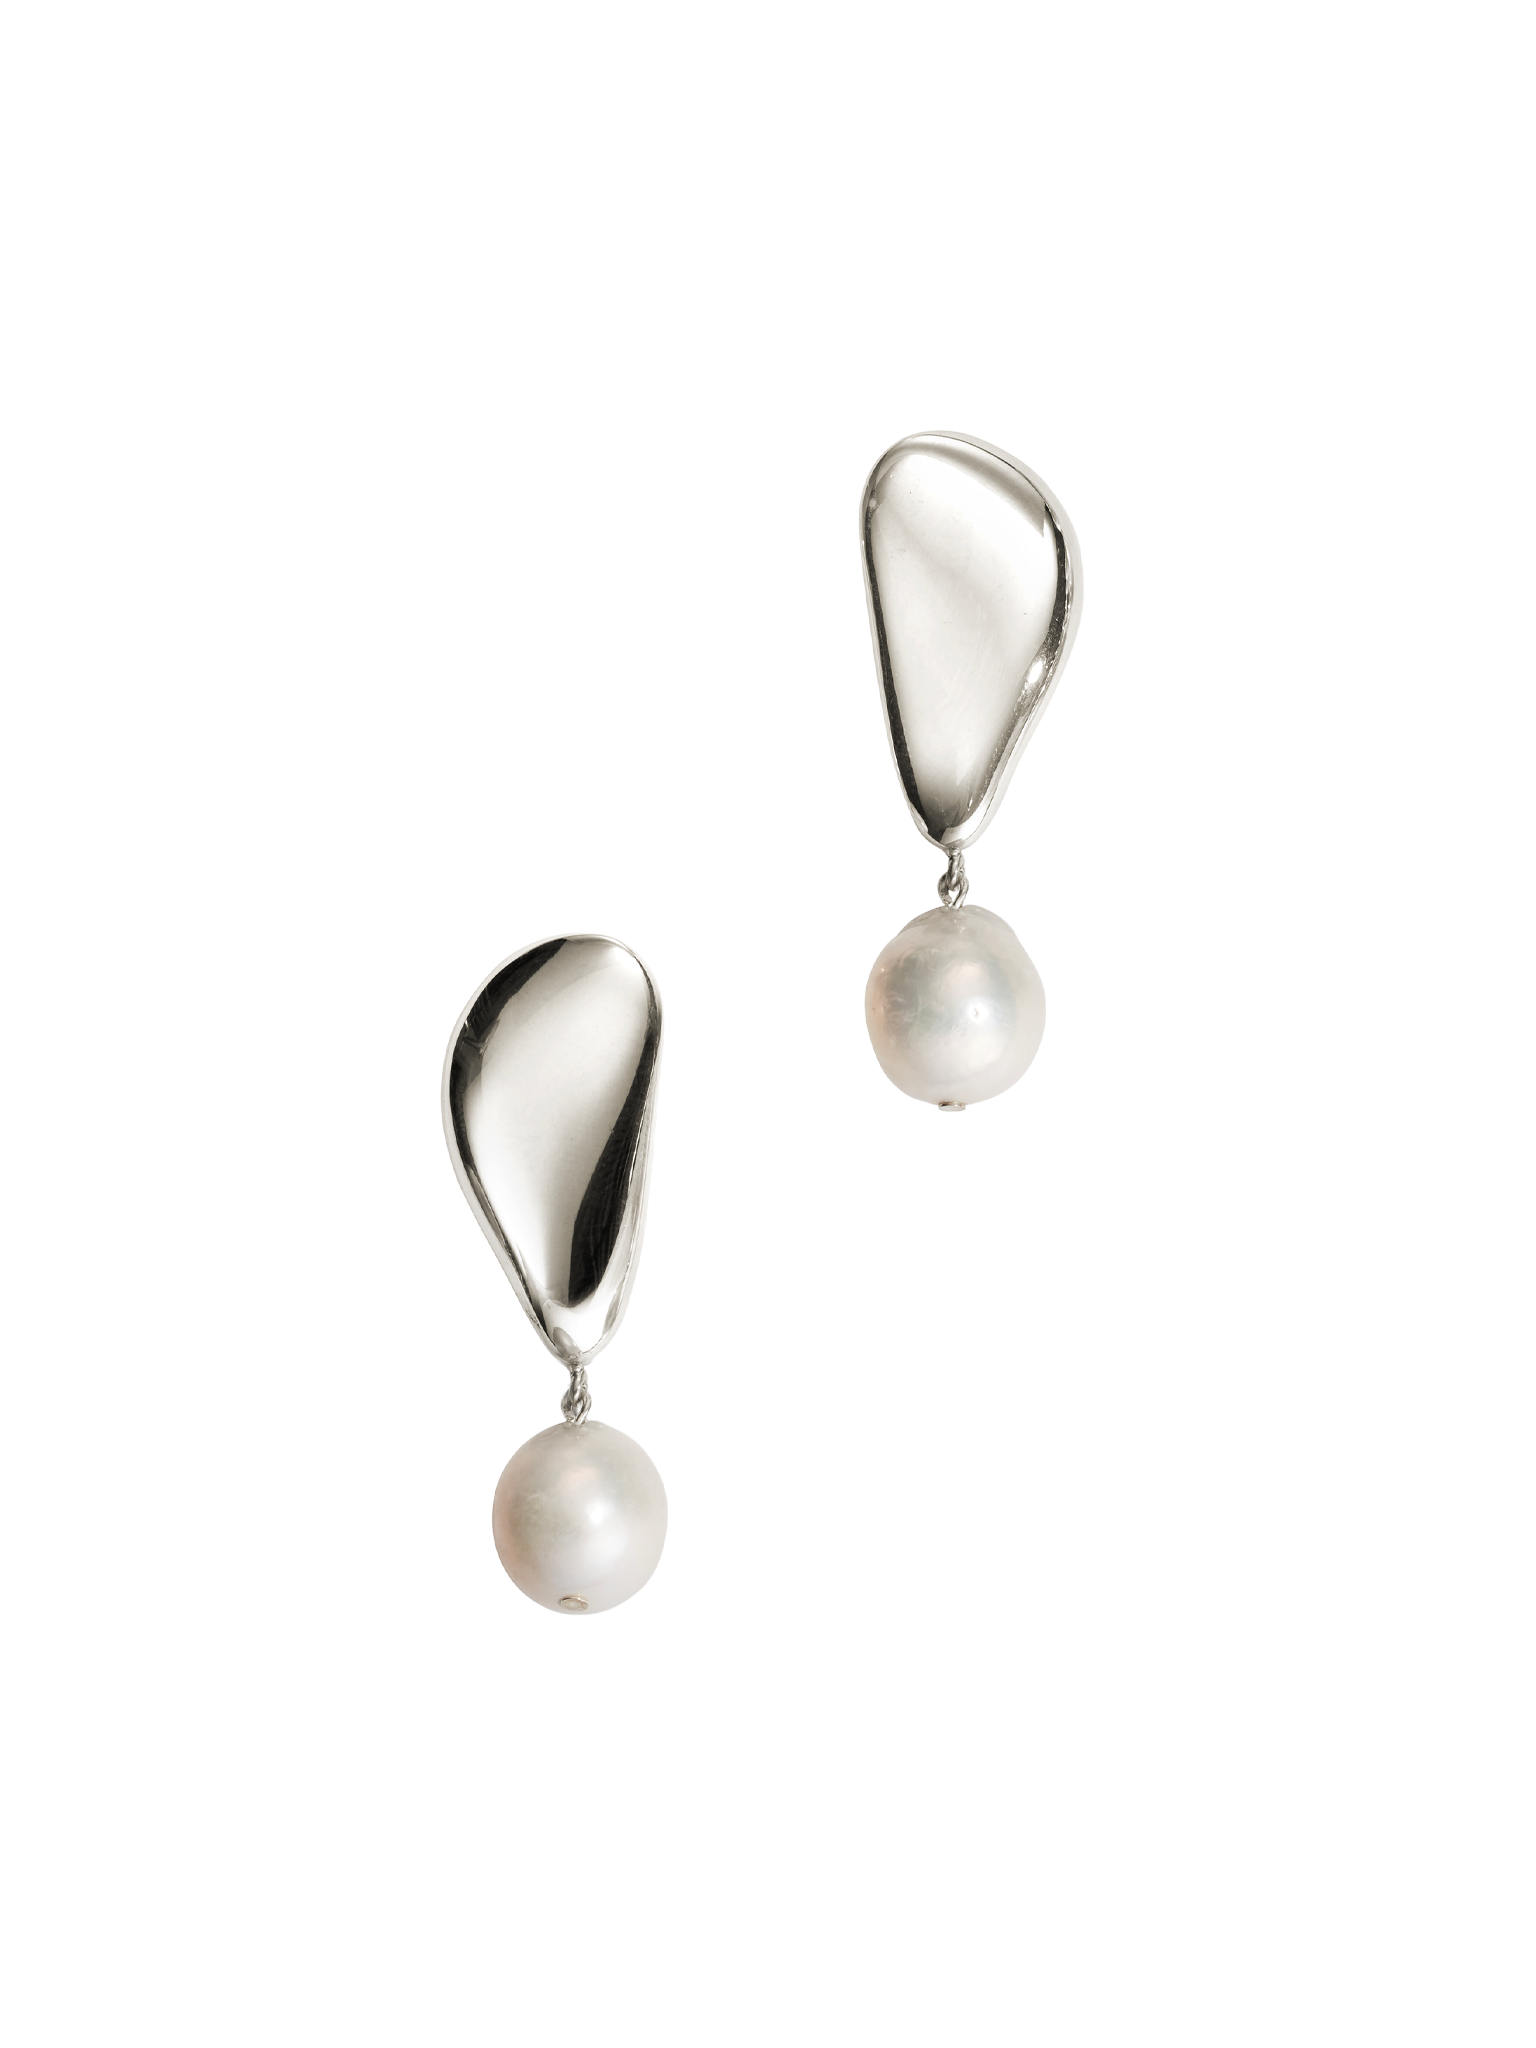 Sherri earrings - sterling silver